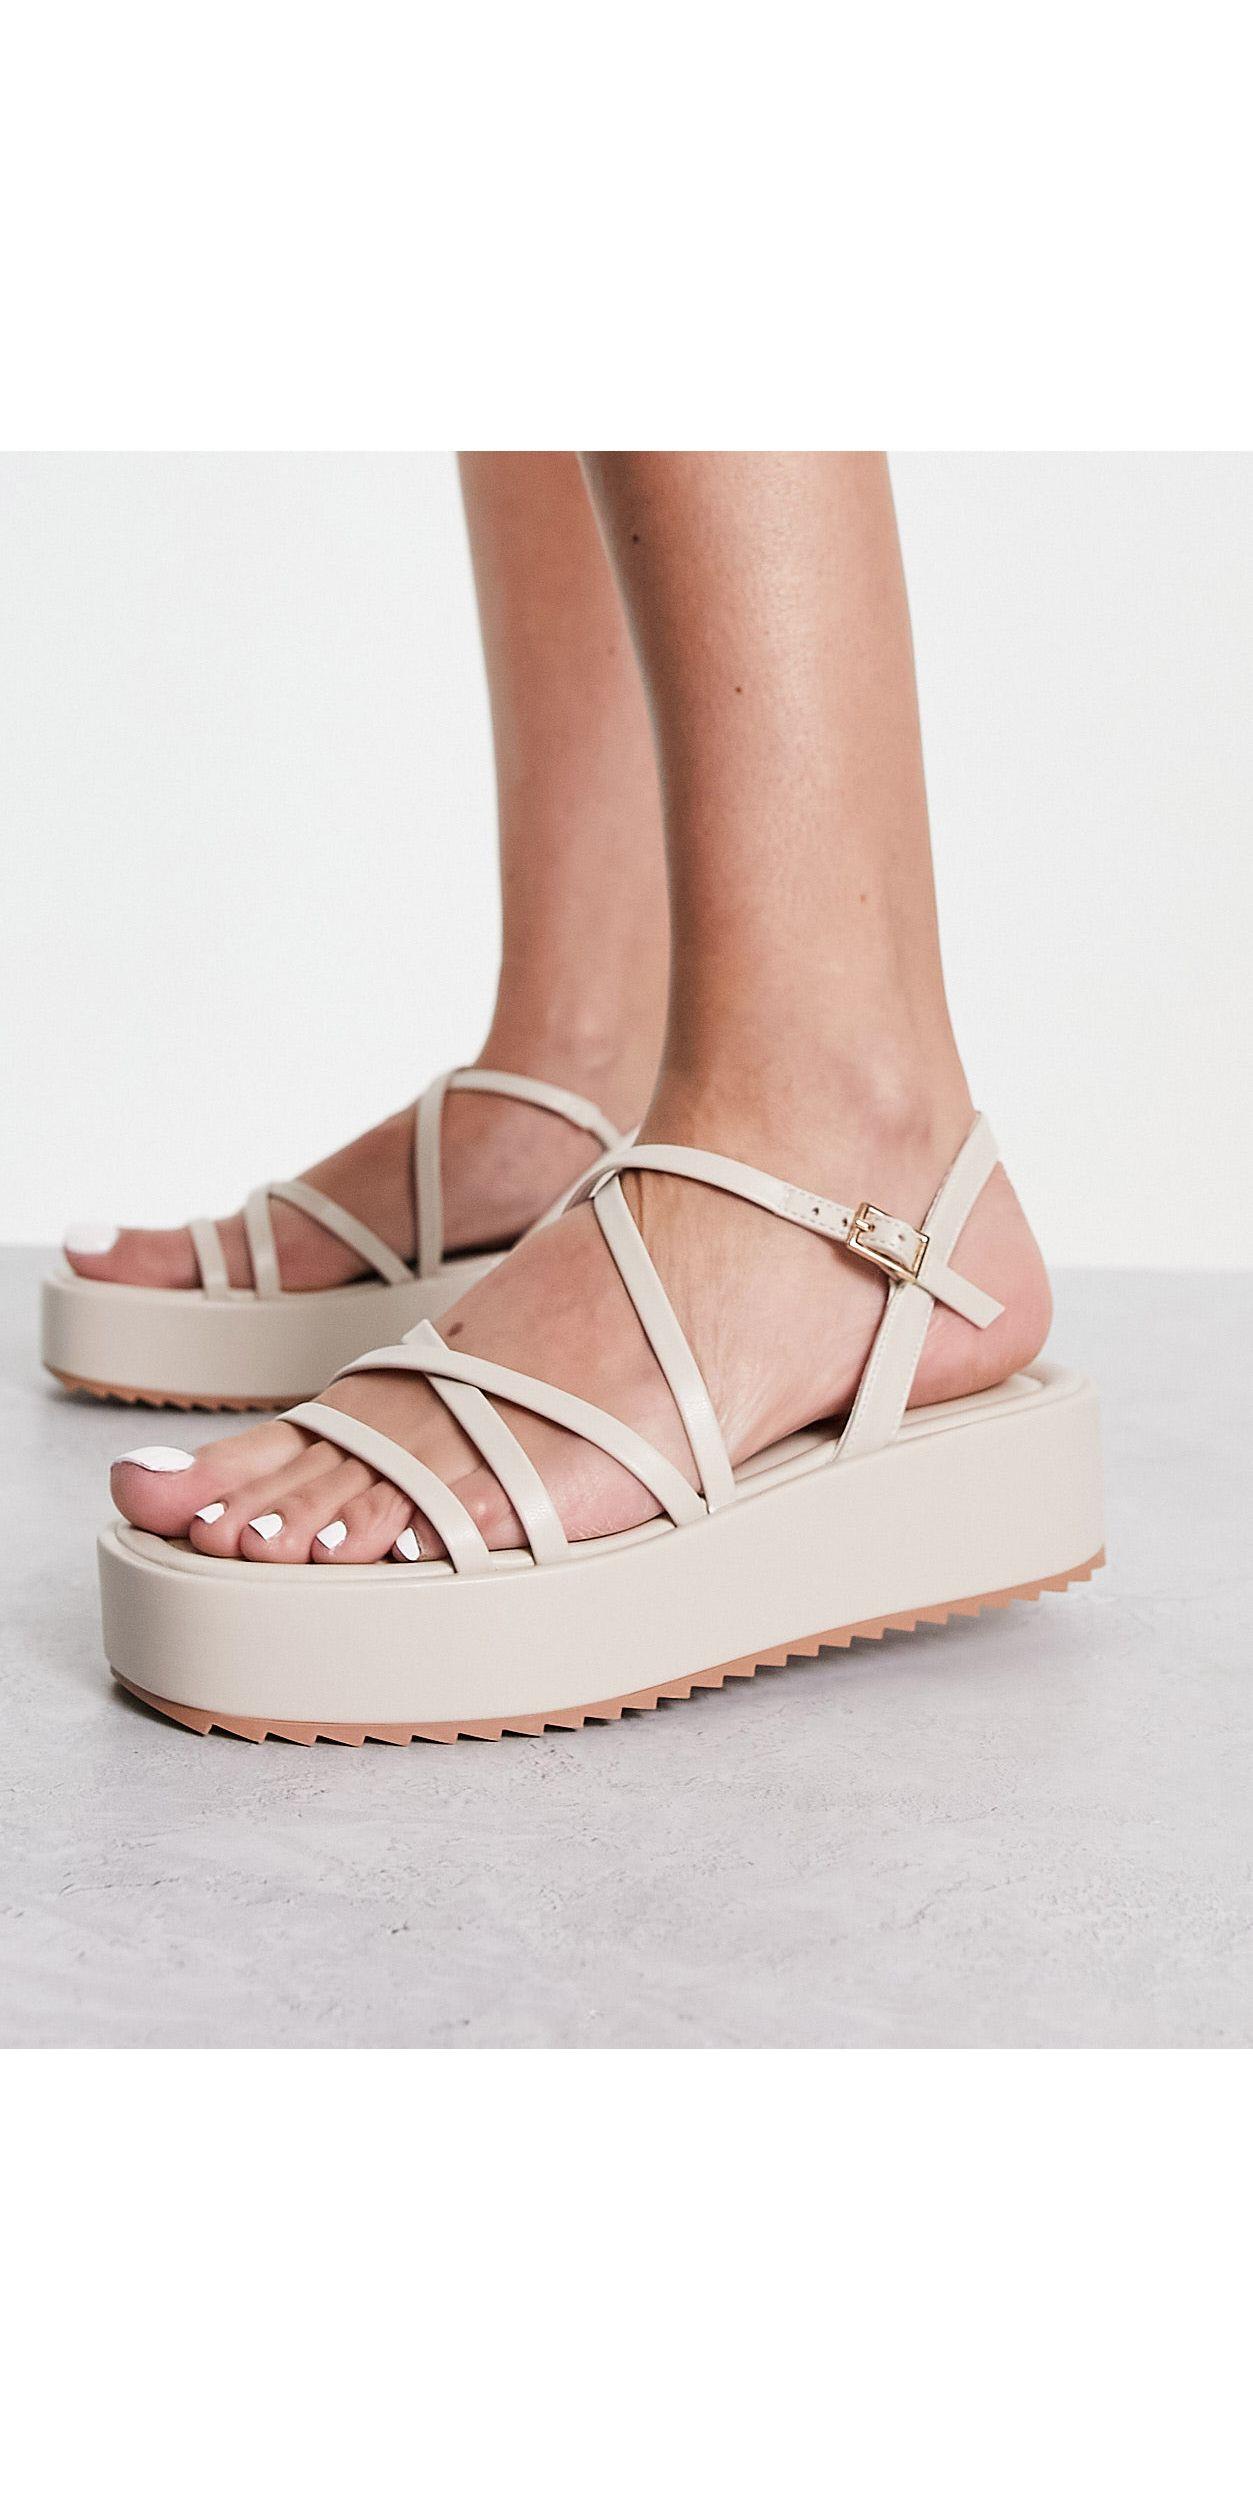 Schuh Taya Strappy Flatform Sandals in White | Lyst